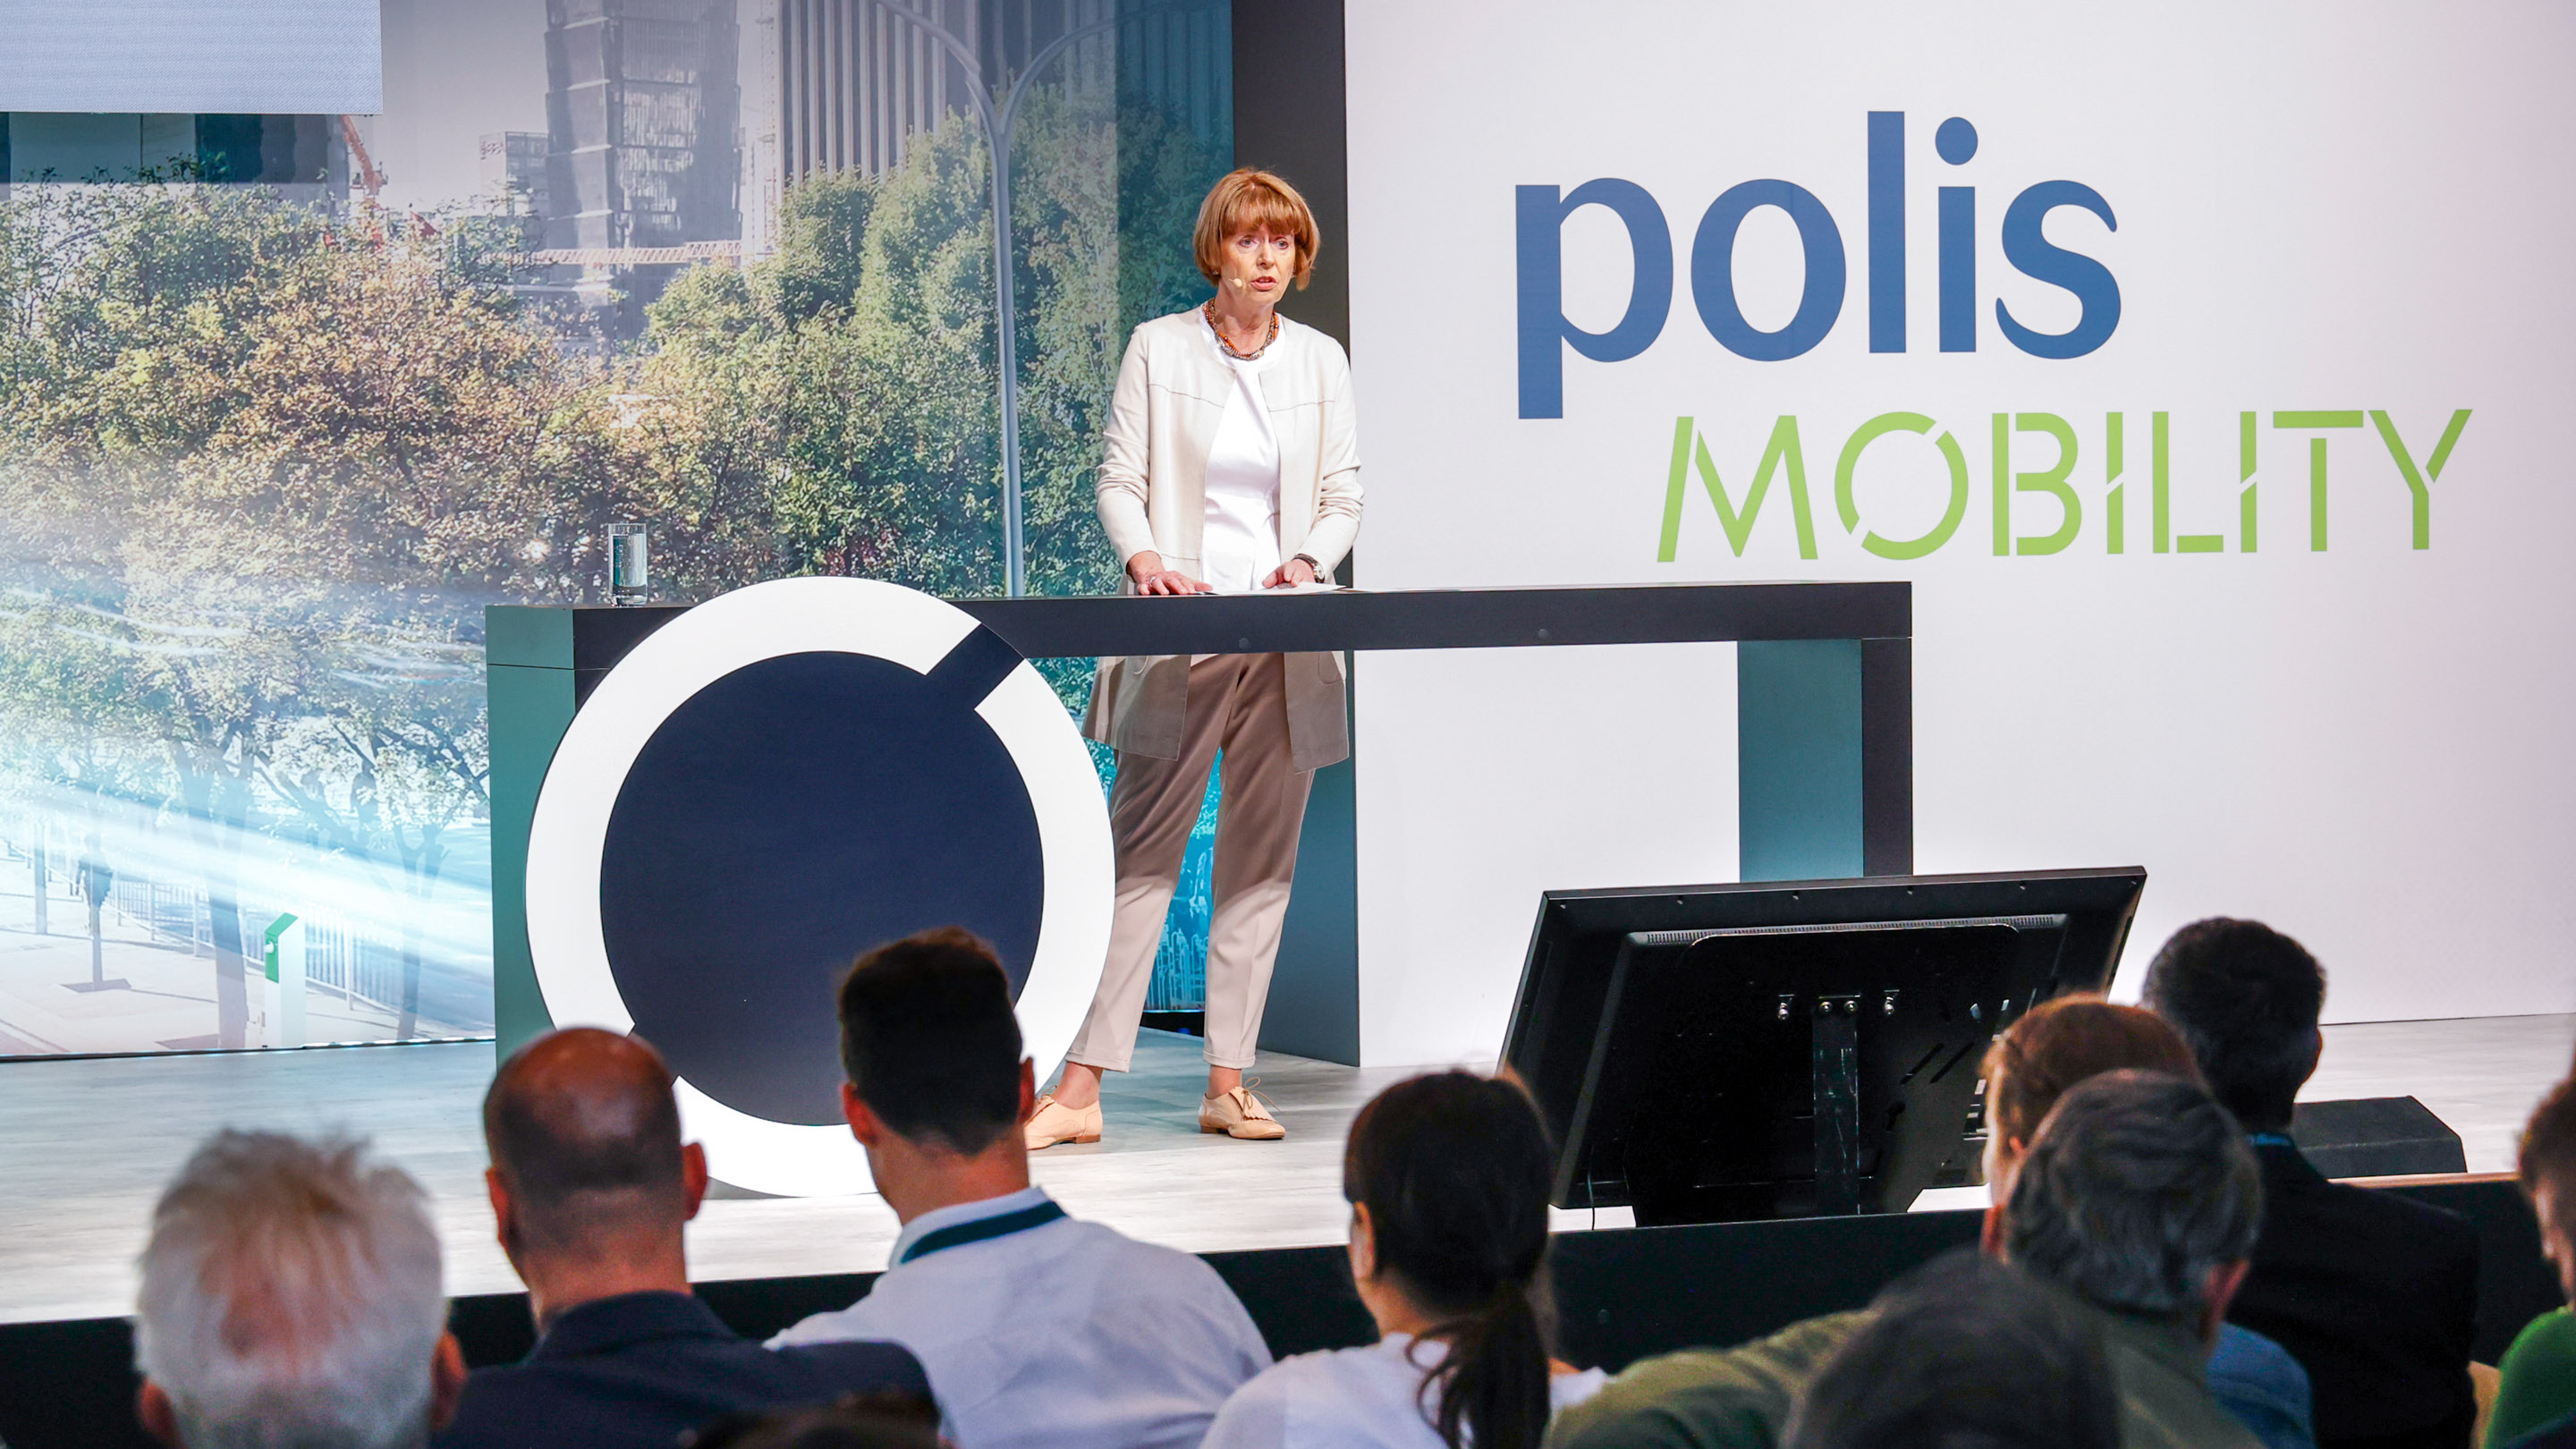 Eröffnung der polisMOBILITY 2022. Rede von Henriette Reker (Oberbürgermeisterin der Stadt Köln).